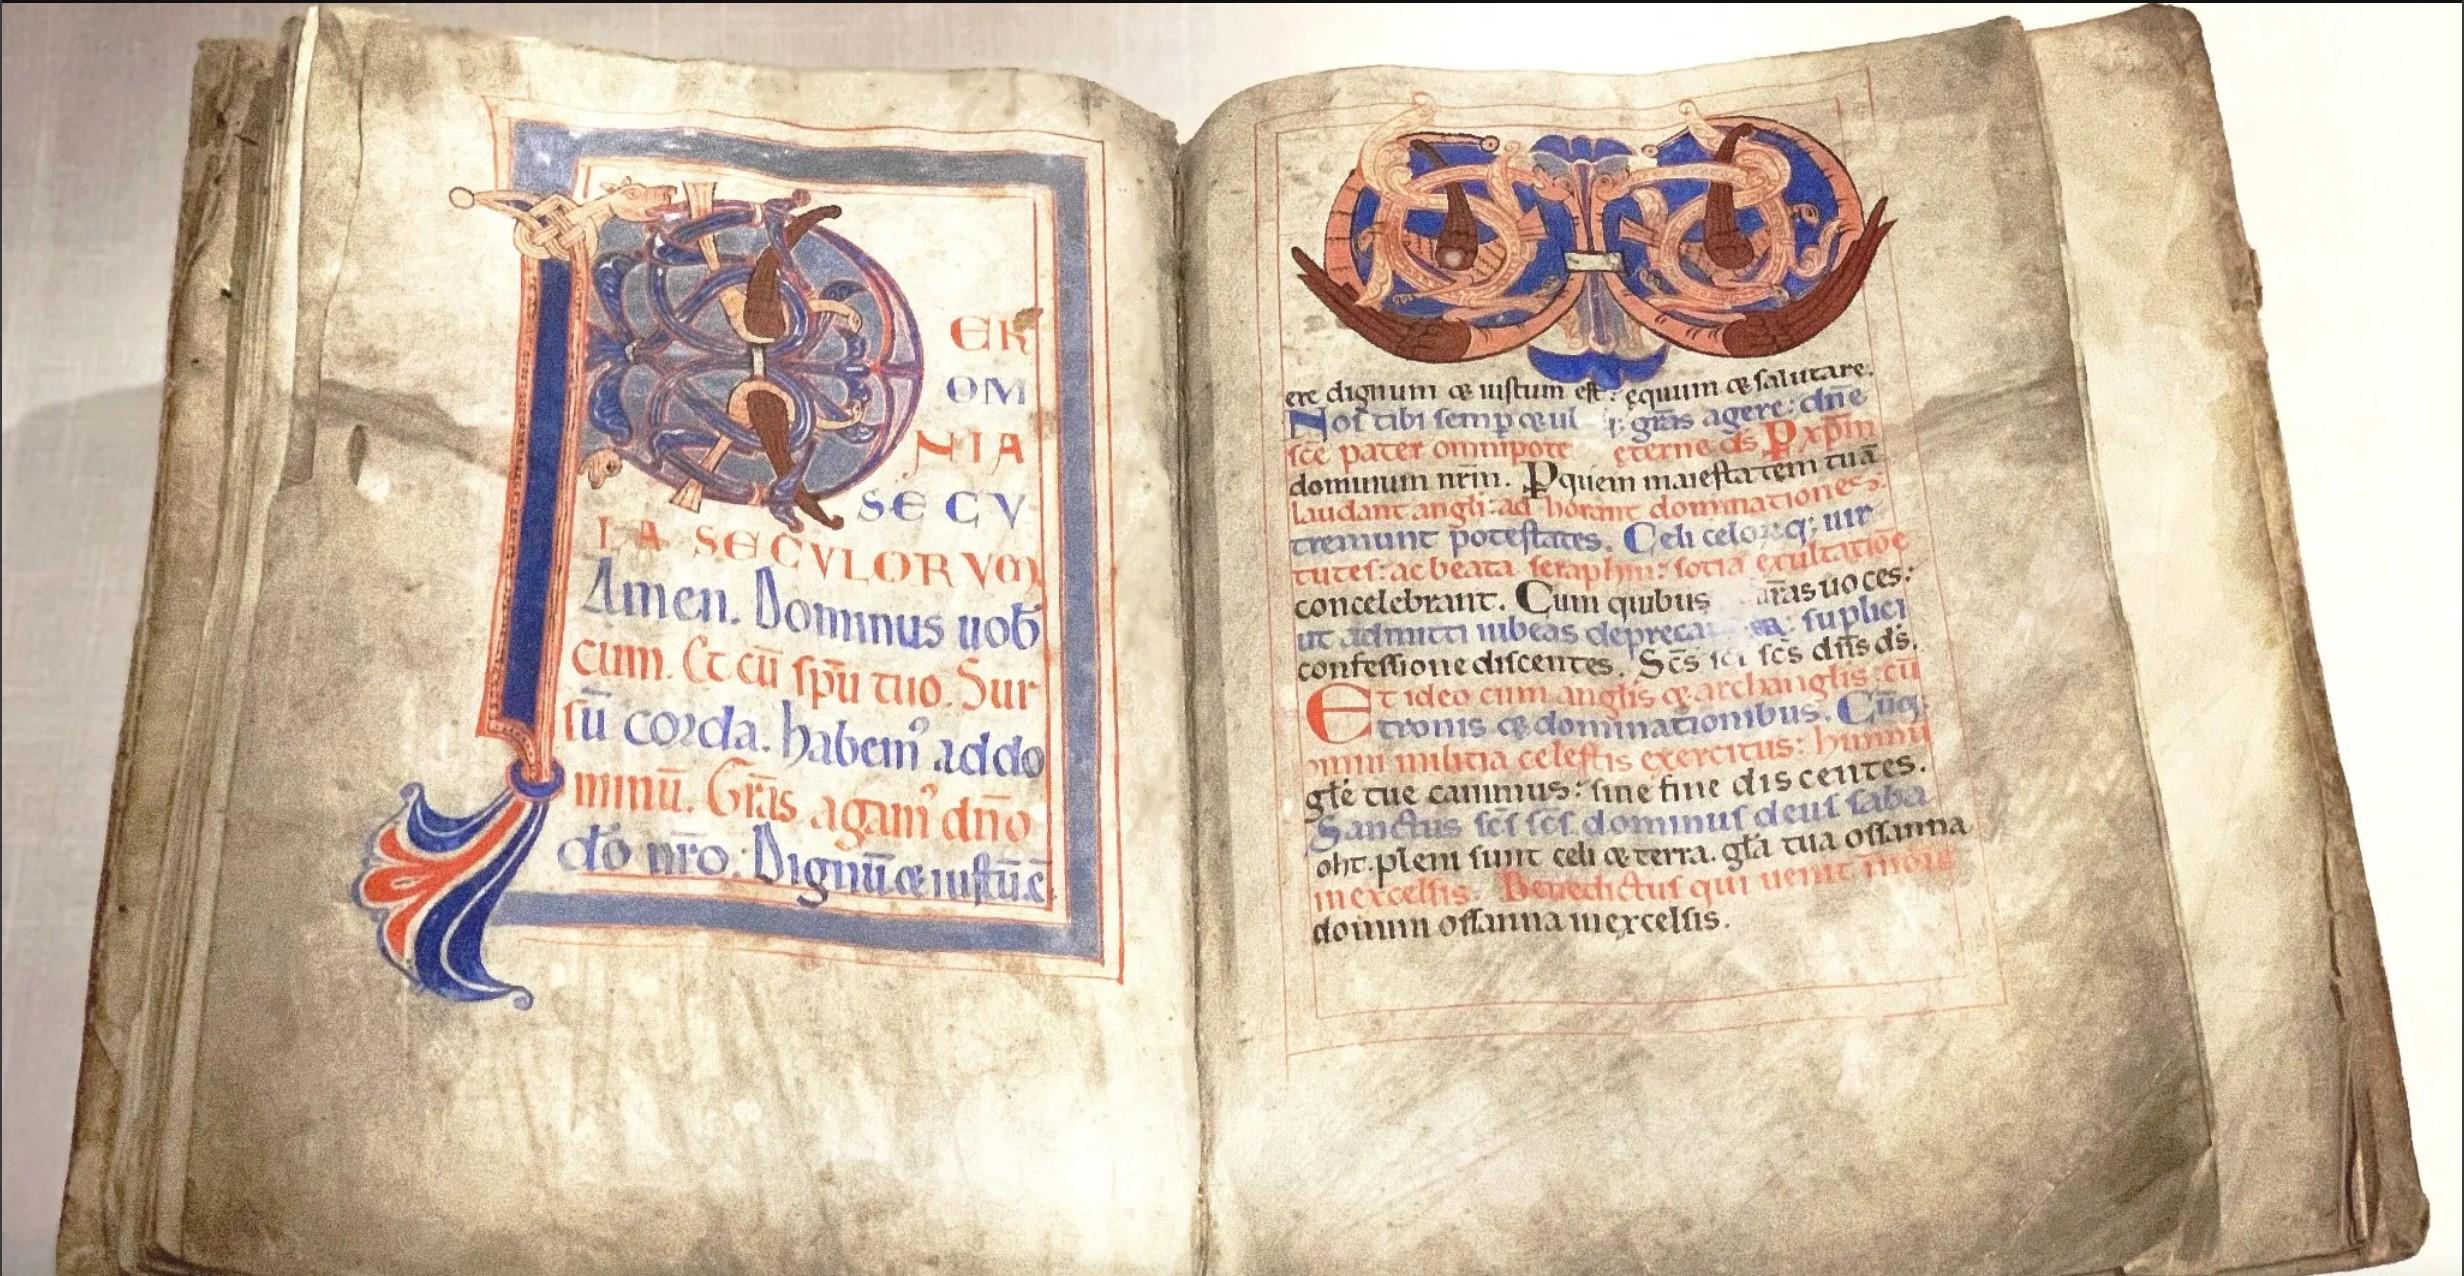 De initialer som finns i boken skiljer sig något åt i stil, vilket kan innebära att arbetet trots konsthistorikern Nordenfalks antaganden, var något som utfördes av flera munkar. Foto: Public Domain